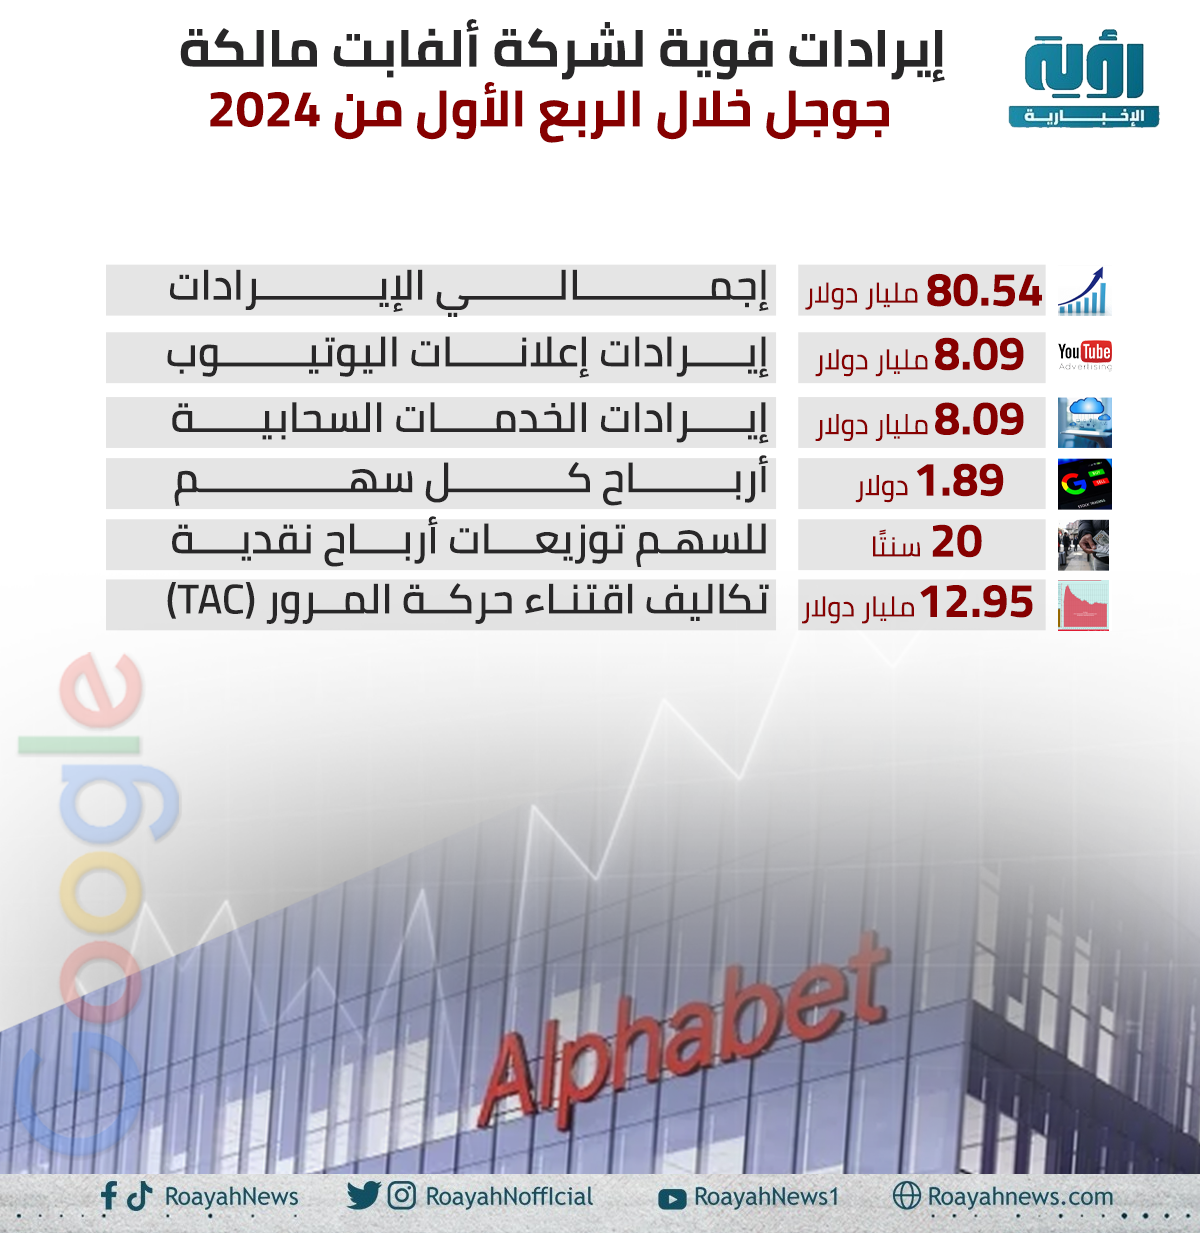 إيرادات قوية لشركة ألفابت مالكة جوجل خلال الربع الأول من 2024